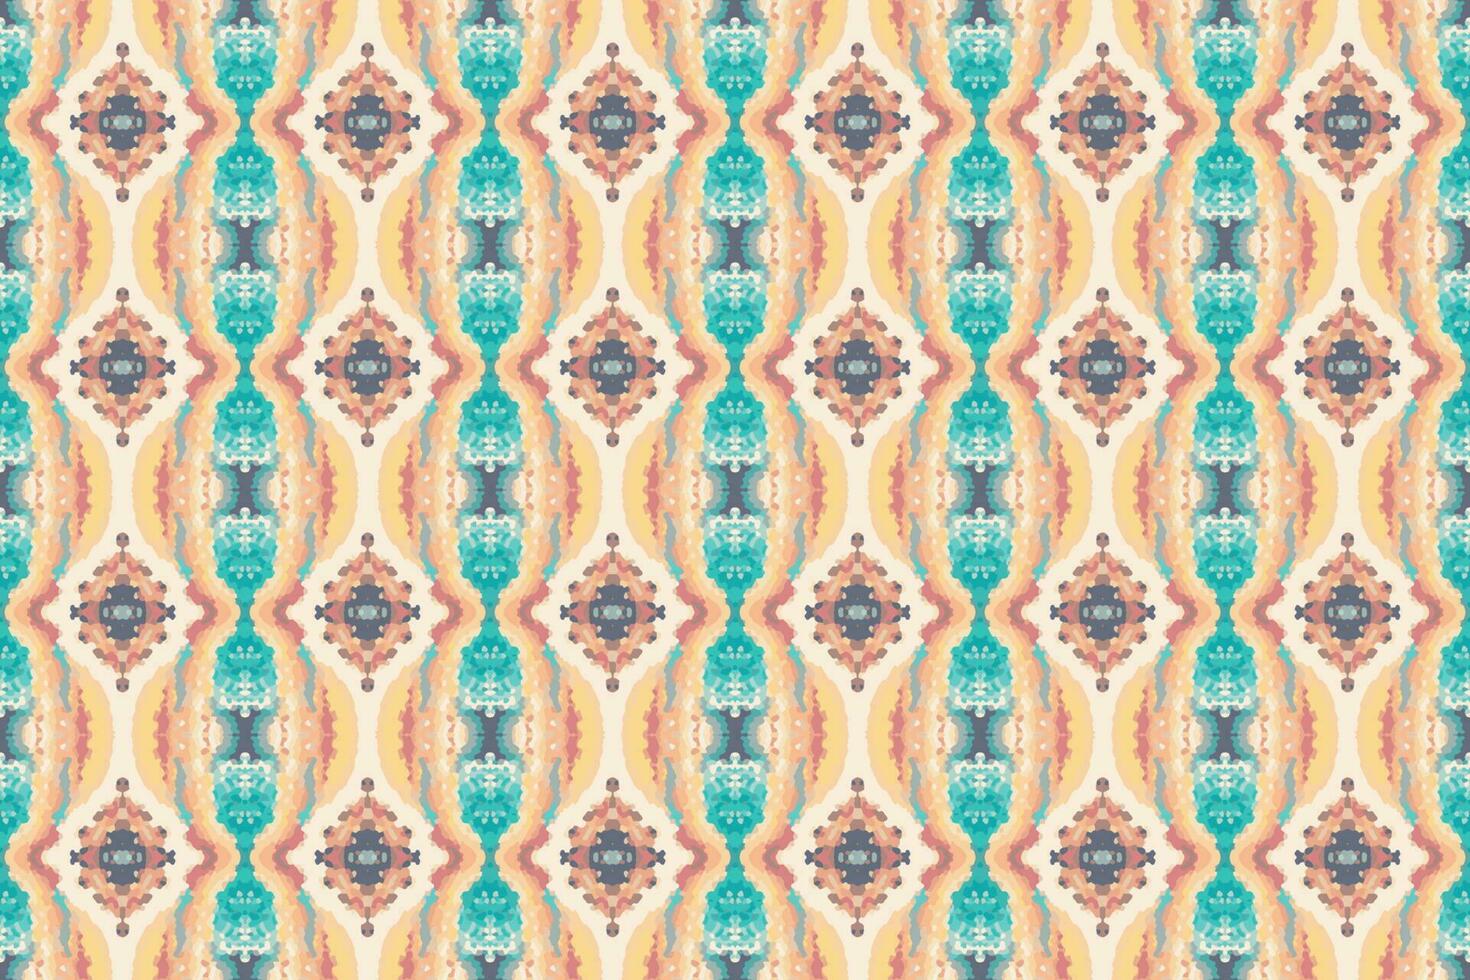 sömlös batik mönster, geometrisk stam- mönster, det liknar etnisk boho, aztek stil,ikat stil.lyx dekorativ tyg mönster för känd banners.designade för använda sig av tyg, gardin, matta, batik vektor